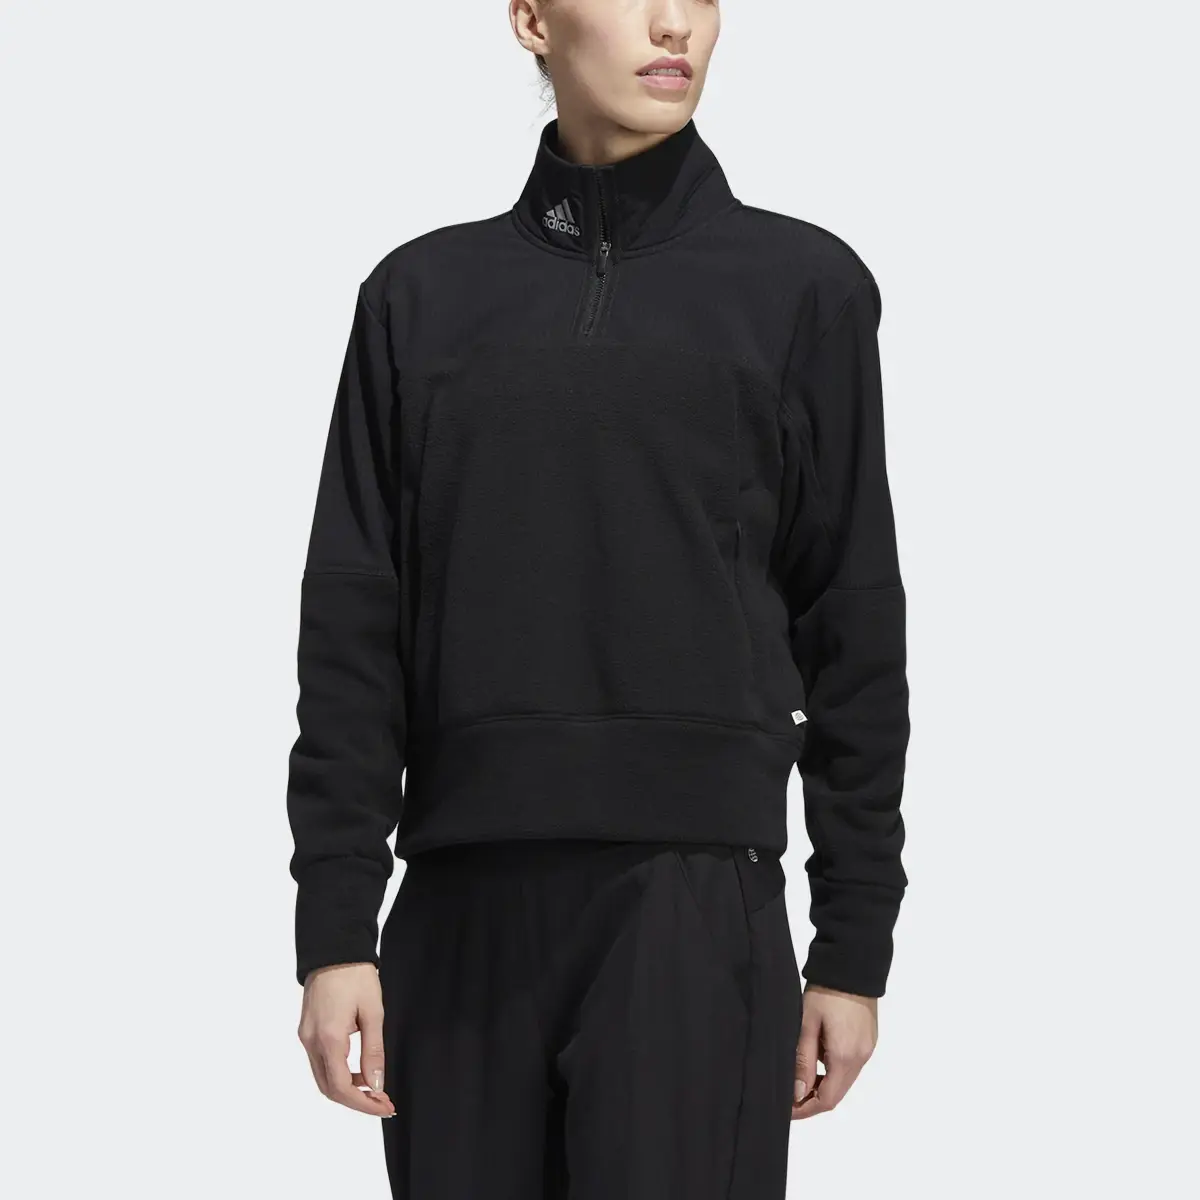 Adidas 1/4-Zip Fleece Jacket. 1